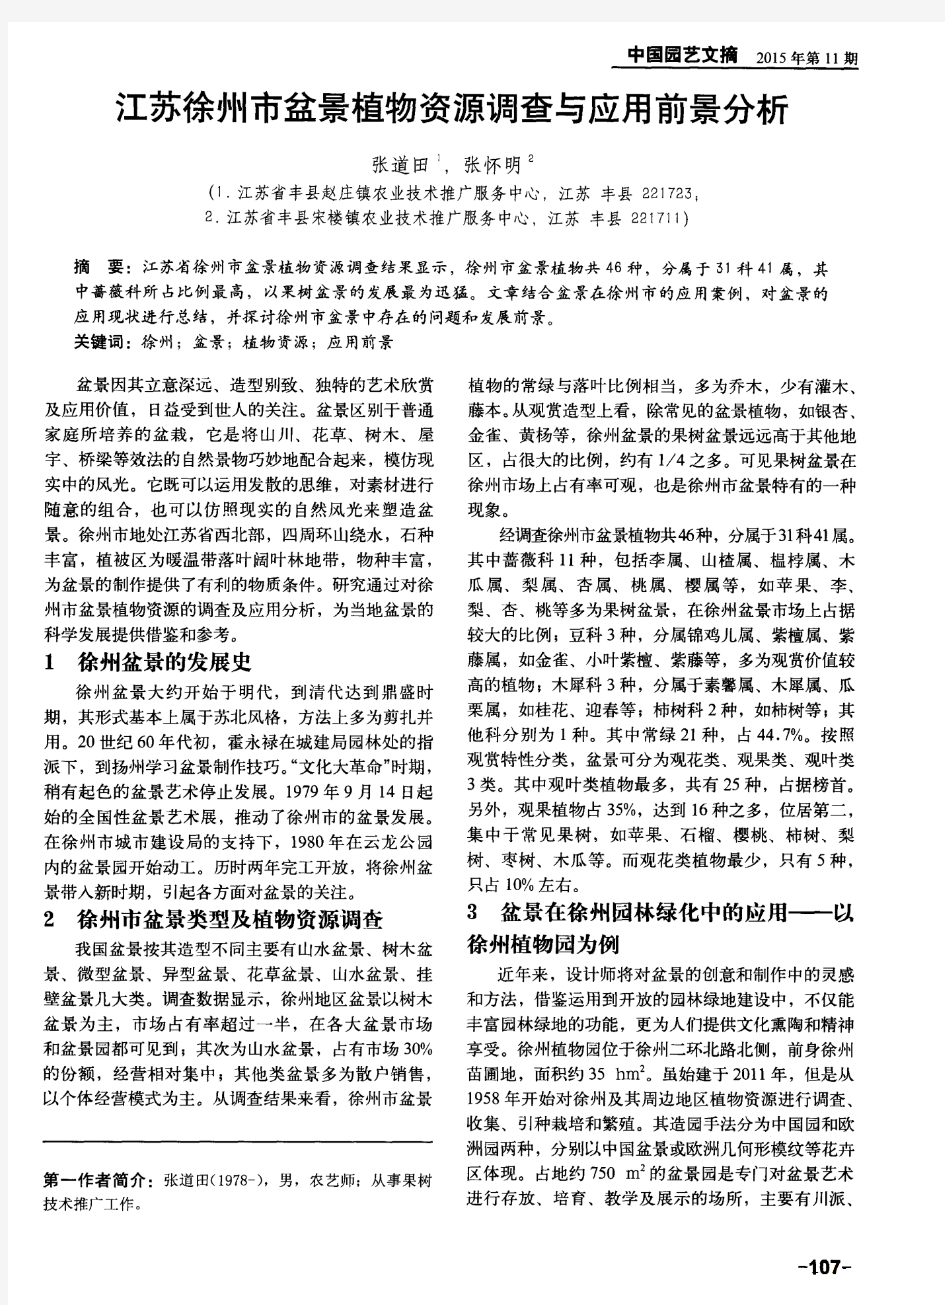 江苏徐州市盆景植物资源调查与应用前景分析